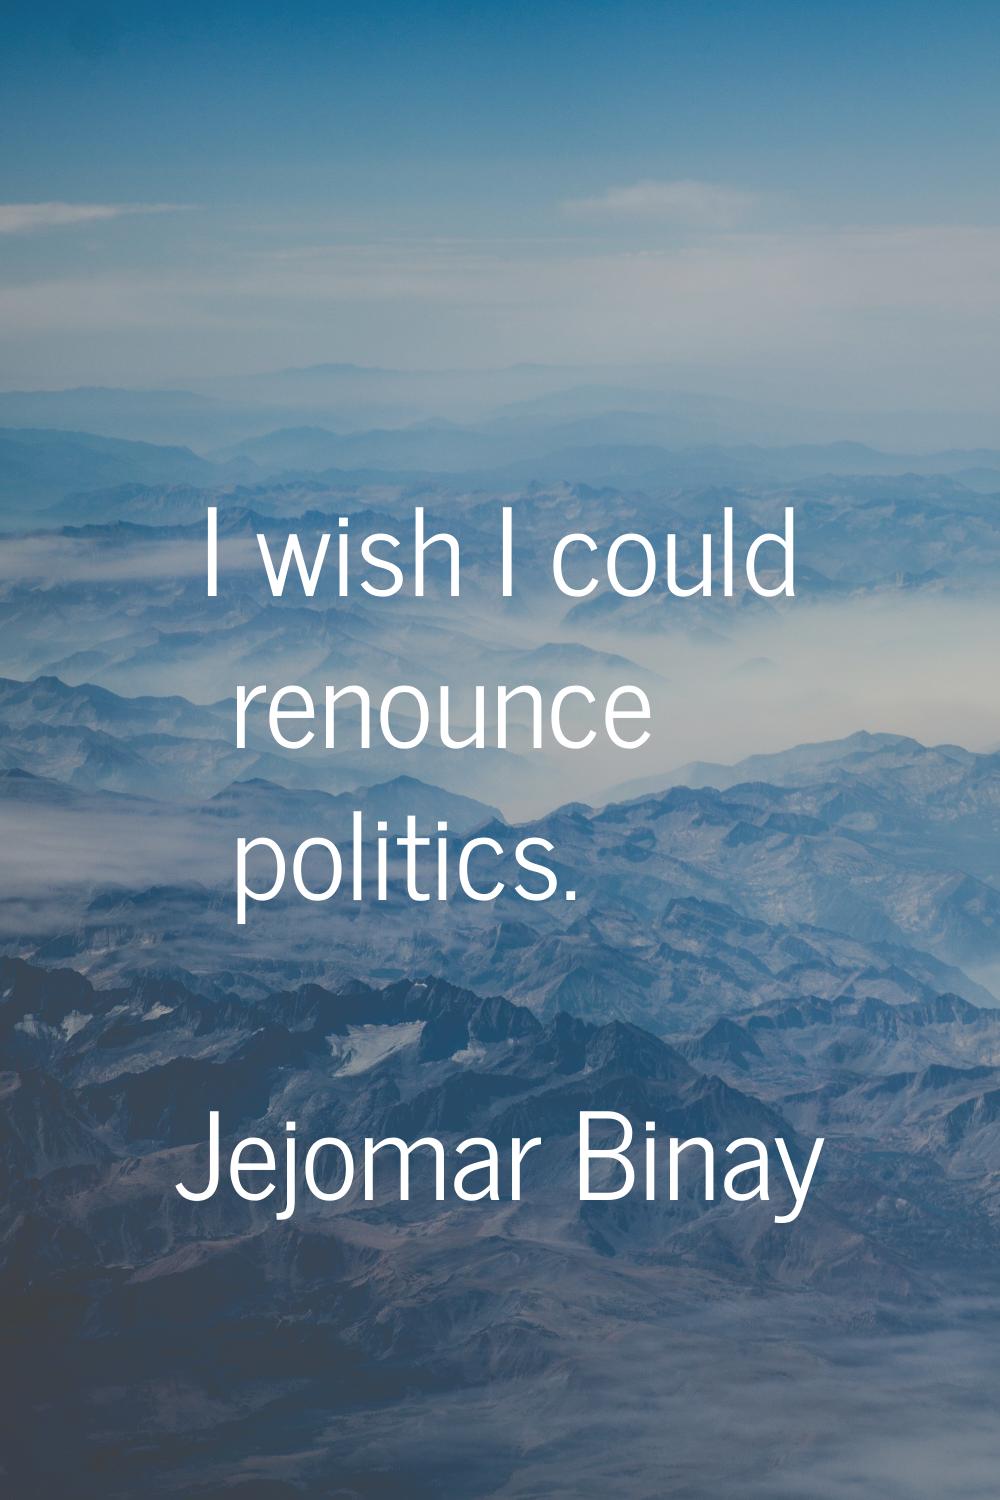 I wish I could renounce politics.